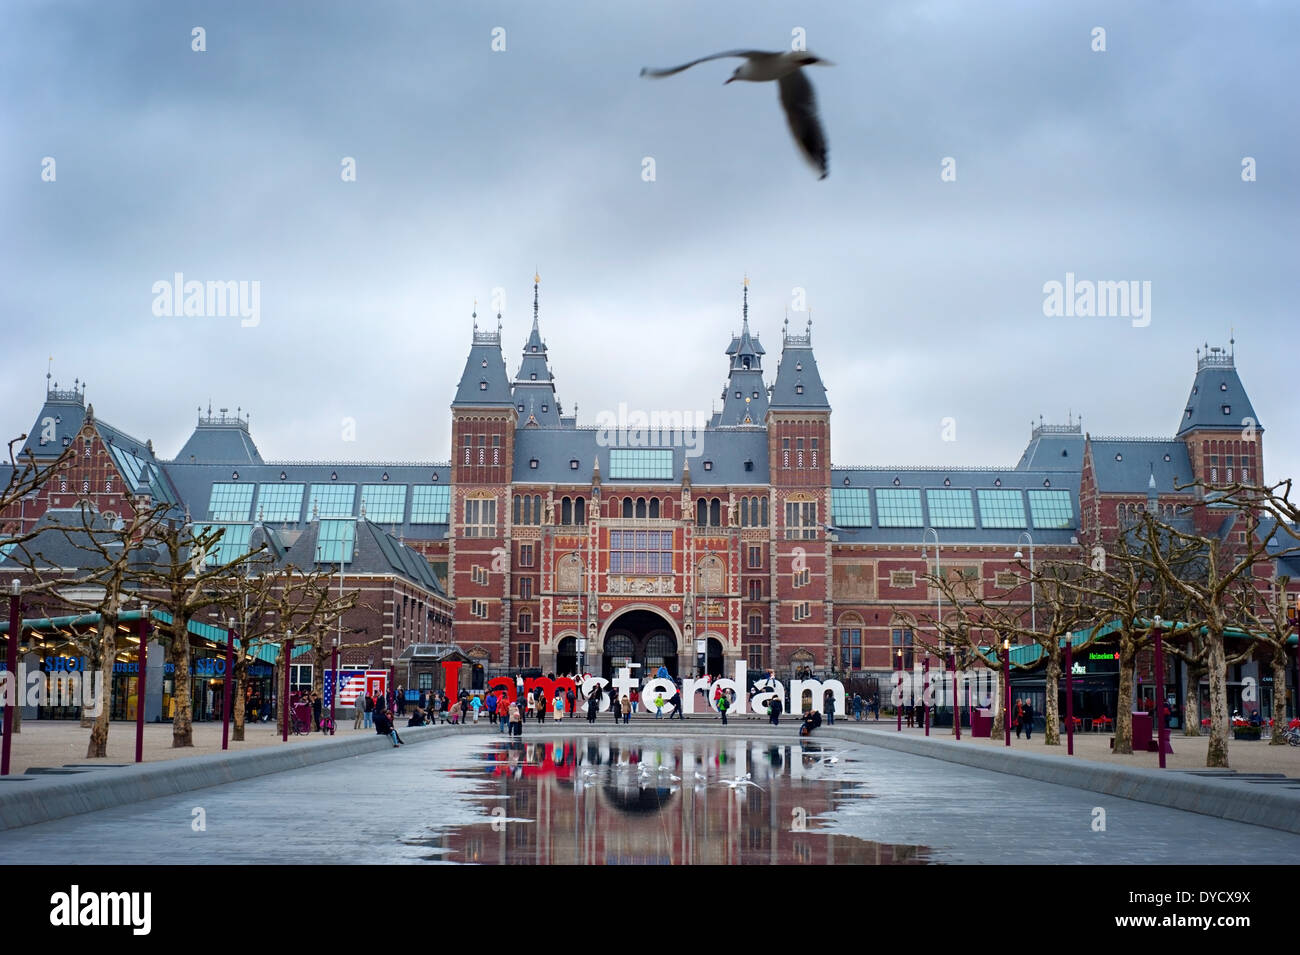 Das Rijksmuseum Amsterdam Museumsbereich mit den Worten Amsterdam. Stockfoto